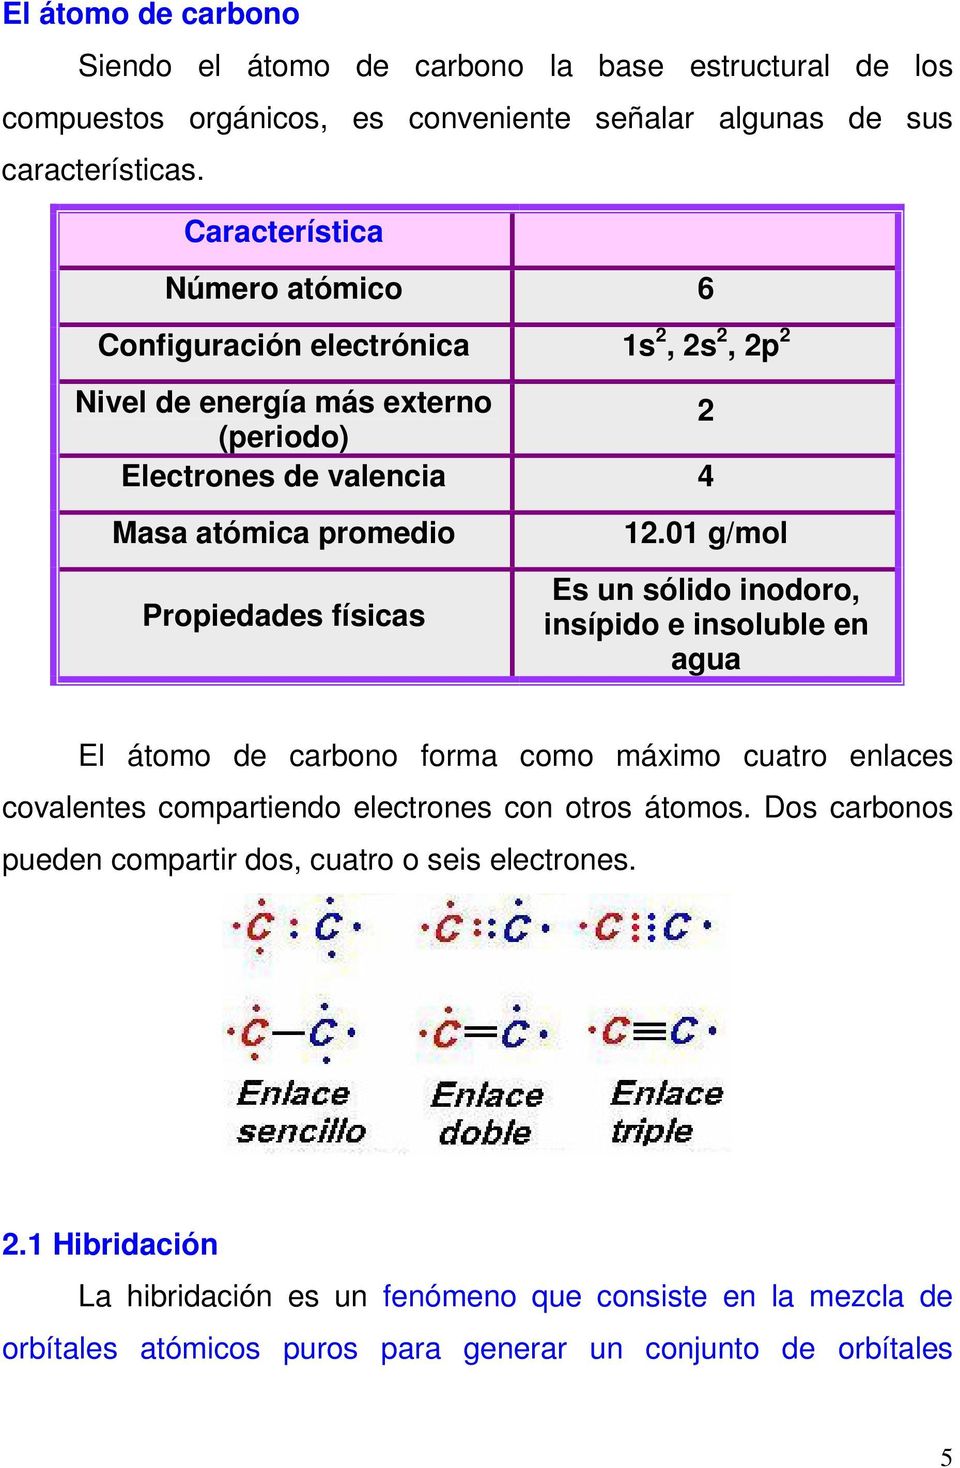 físicas 12.01 g/mol Es un sólido inodoro, insípido e insoluble en agua El átomo de carbono forma como máximo cuatro enlaces covalentes compartiendo electrones con otros átomos.